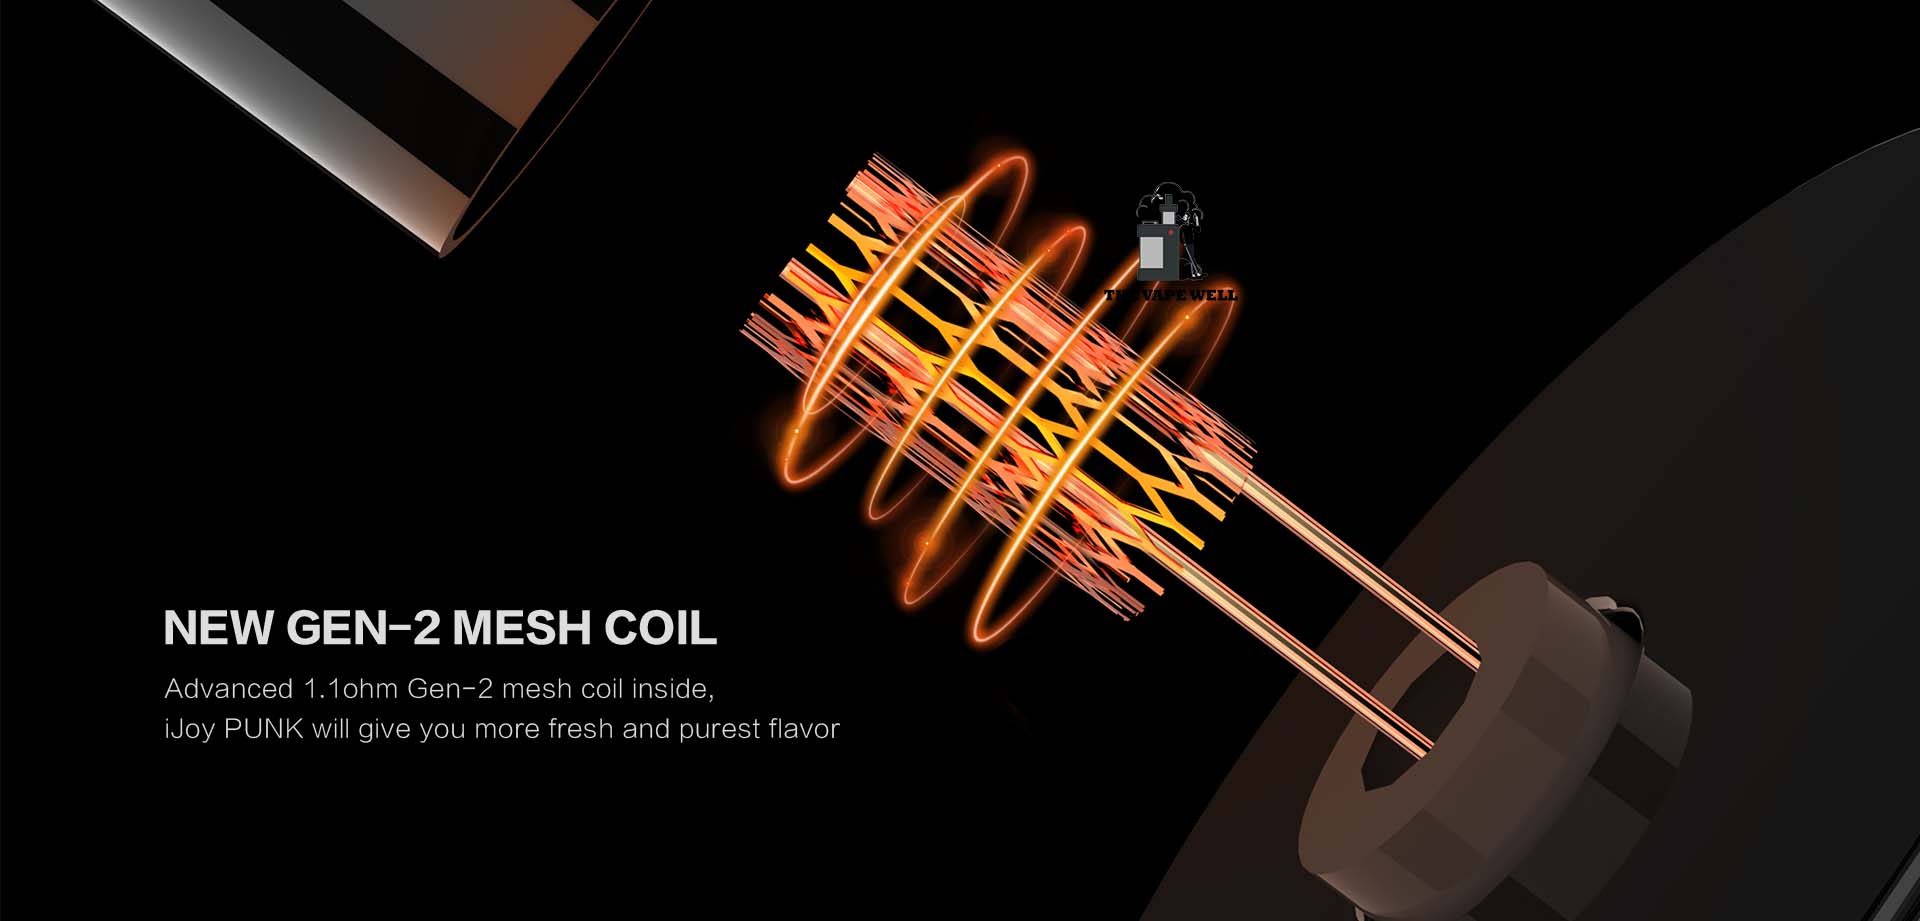 Pod ijoy Punk 4500 hơi sử dụng new gen-2 mesh coil